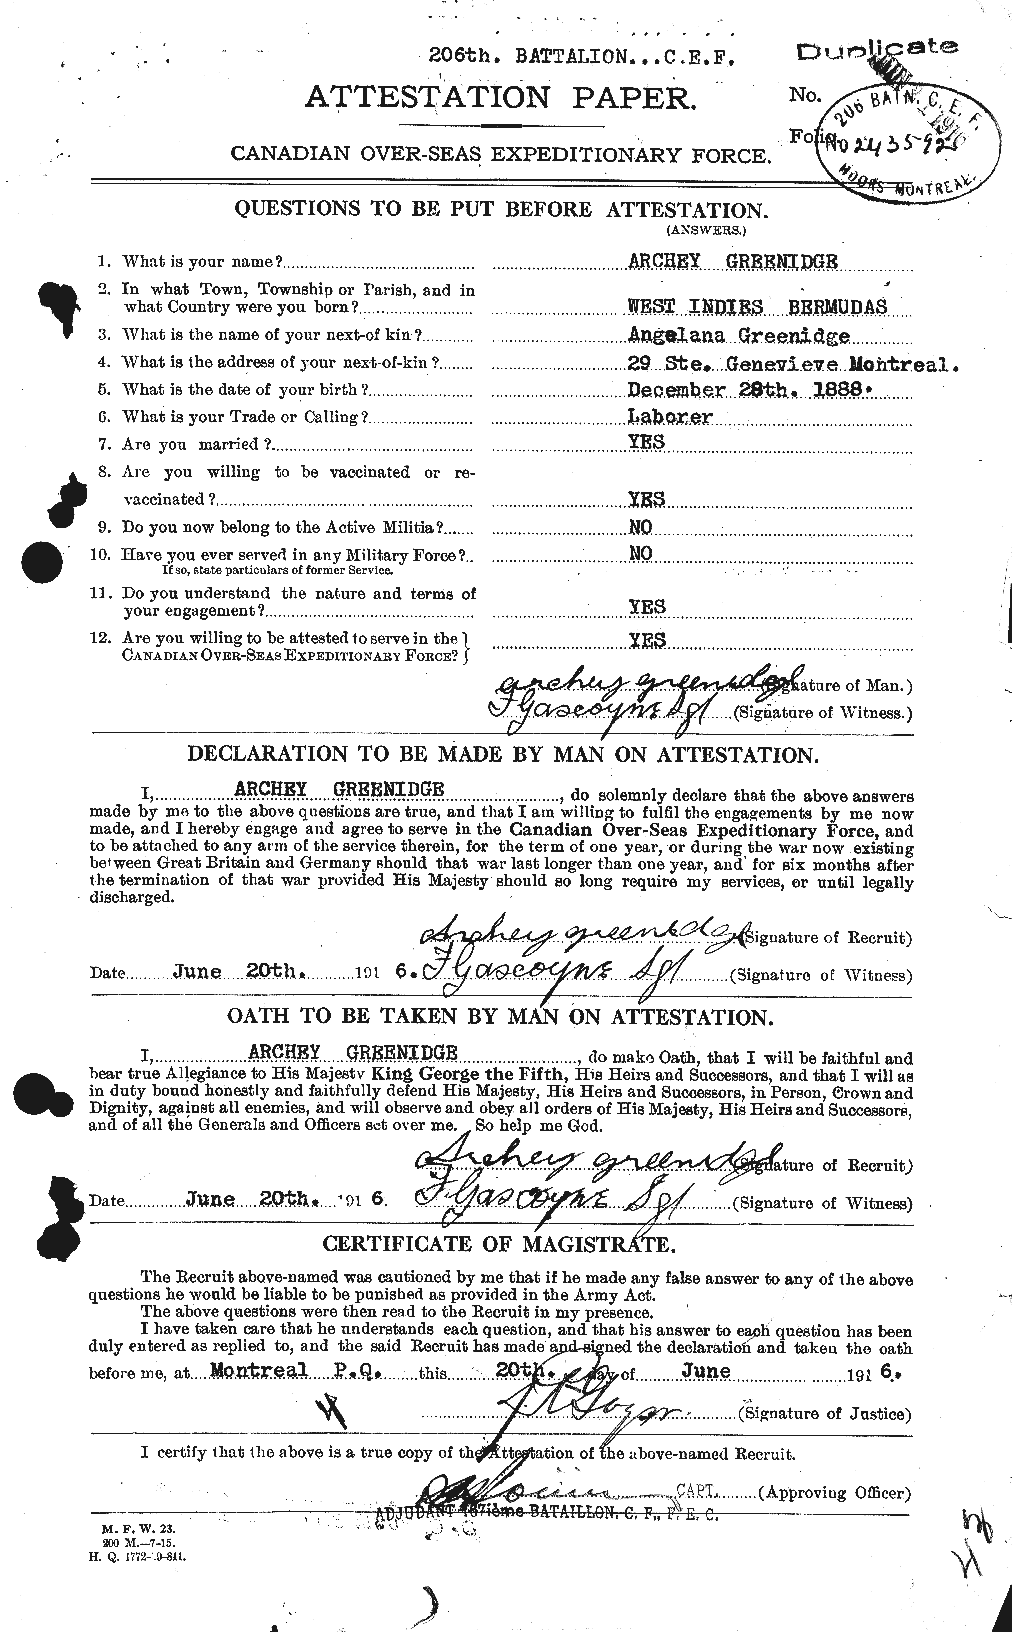 Dossiers du Personnel de la Première Guerre mondiale - CEC 364176a